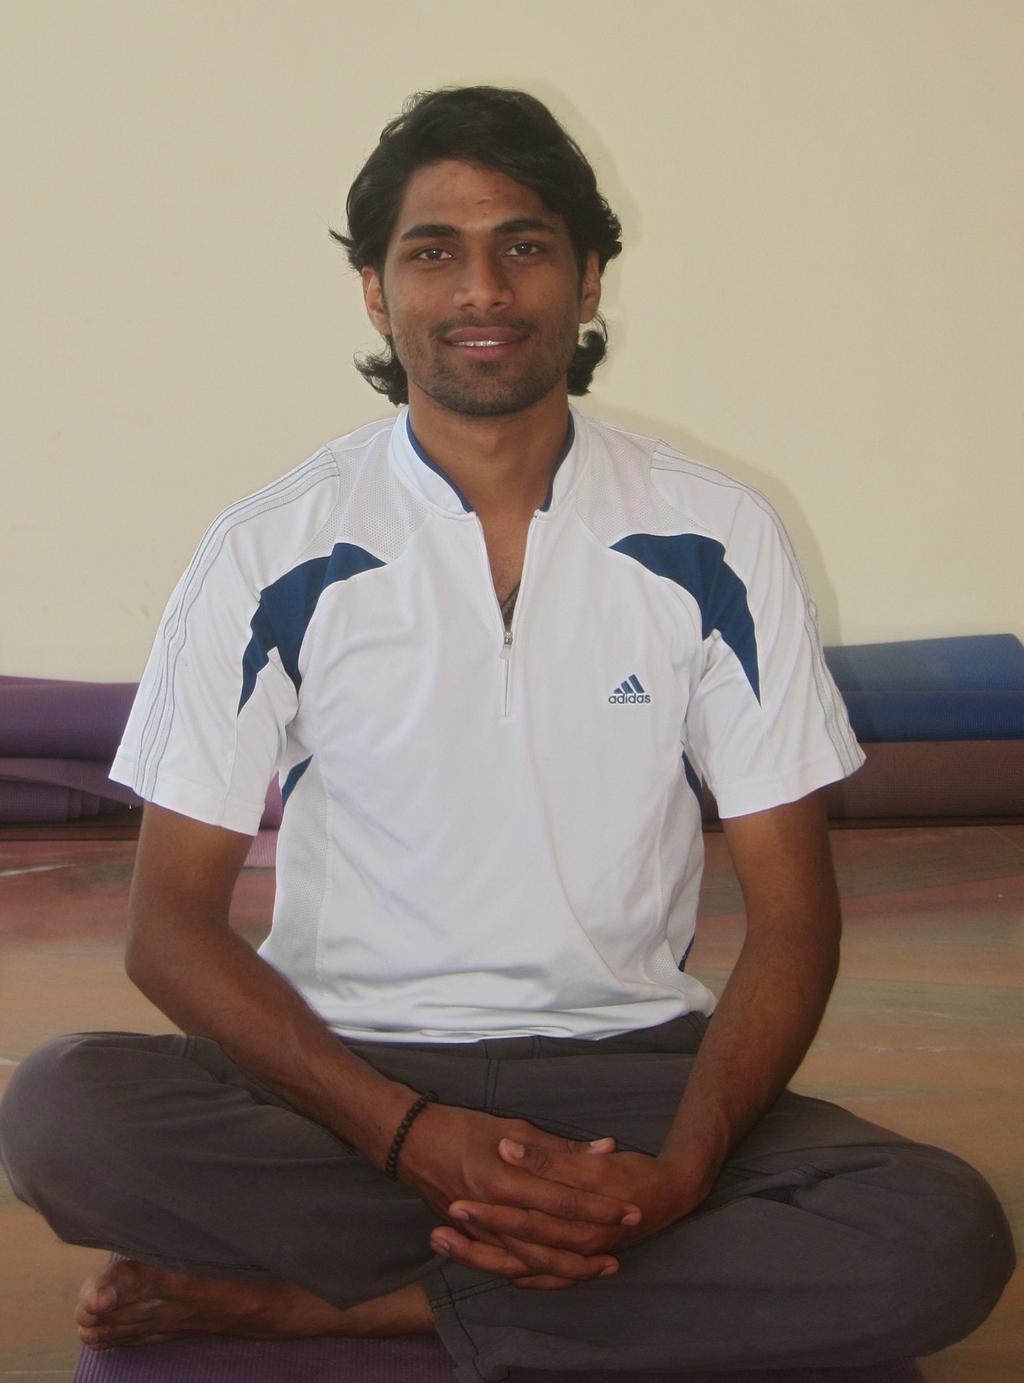 Thereafter Hemant studied yoga philosophy for 1 year at Banaras Hindu University, Varanasi, and continued his education for 3 years at Swami Vivekananda Yoga Anusandhan Samsthana, Bangalore.